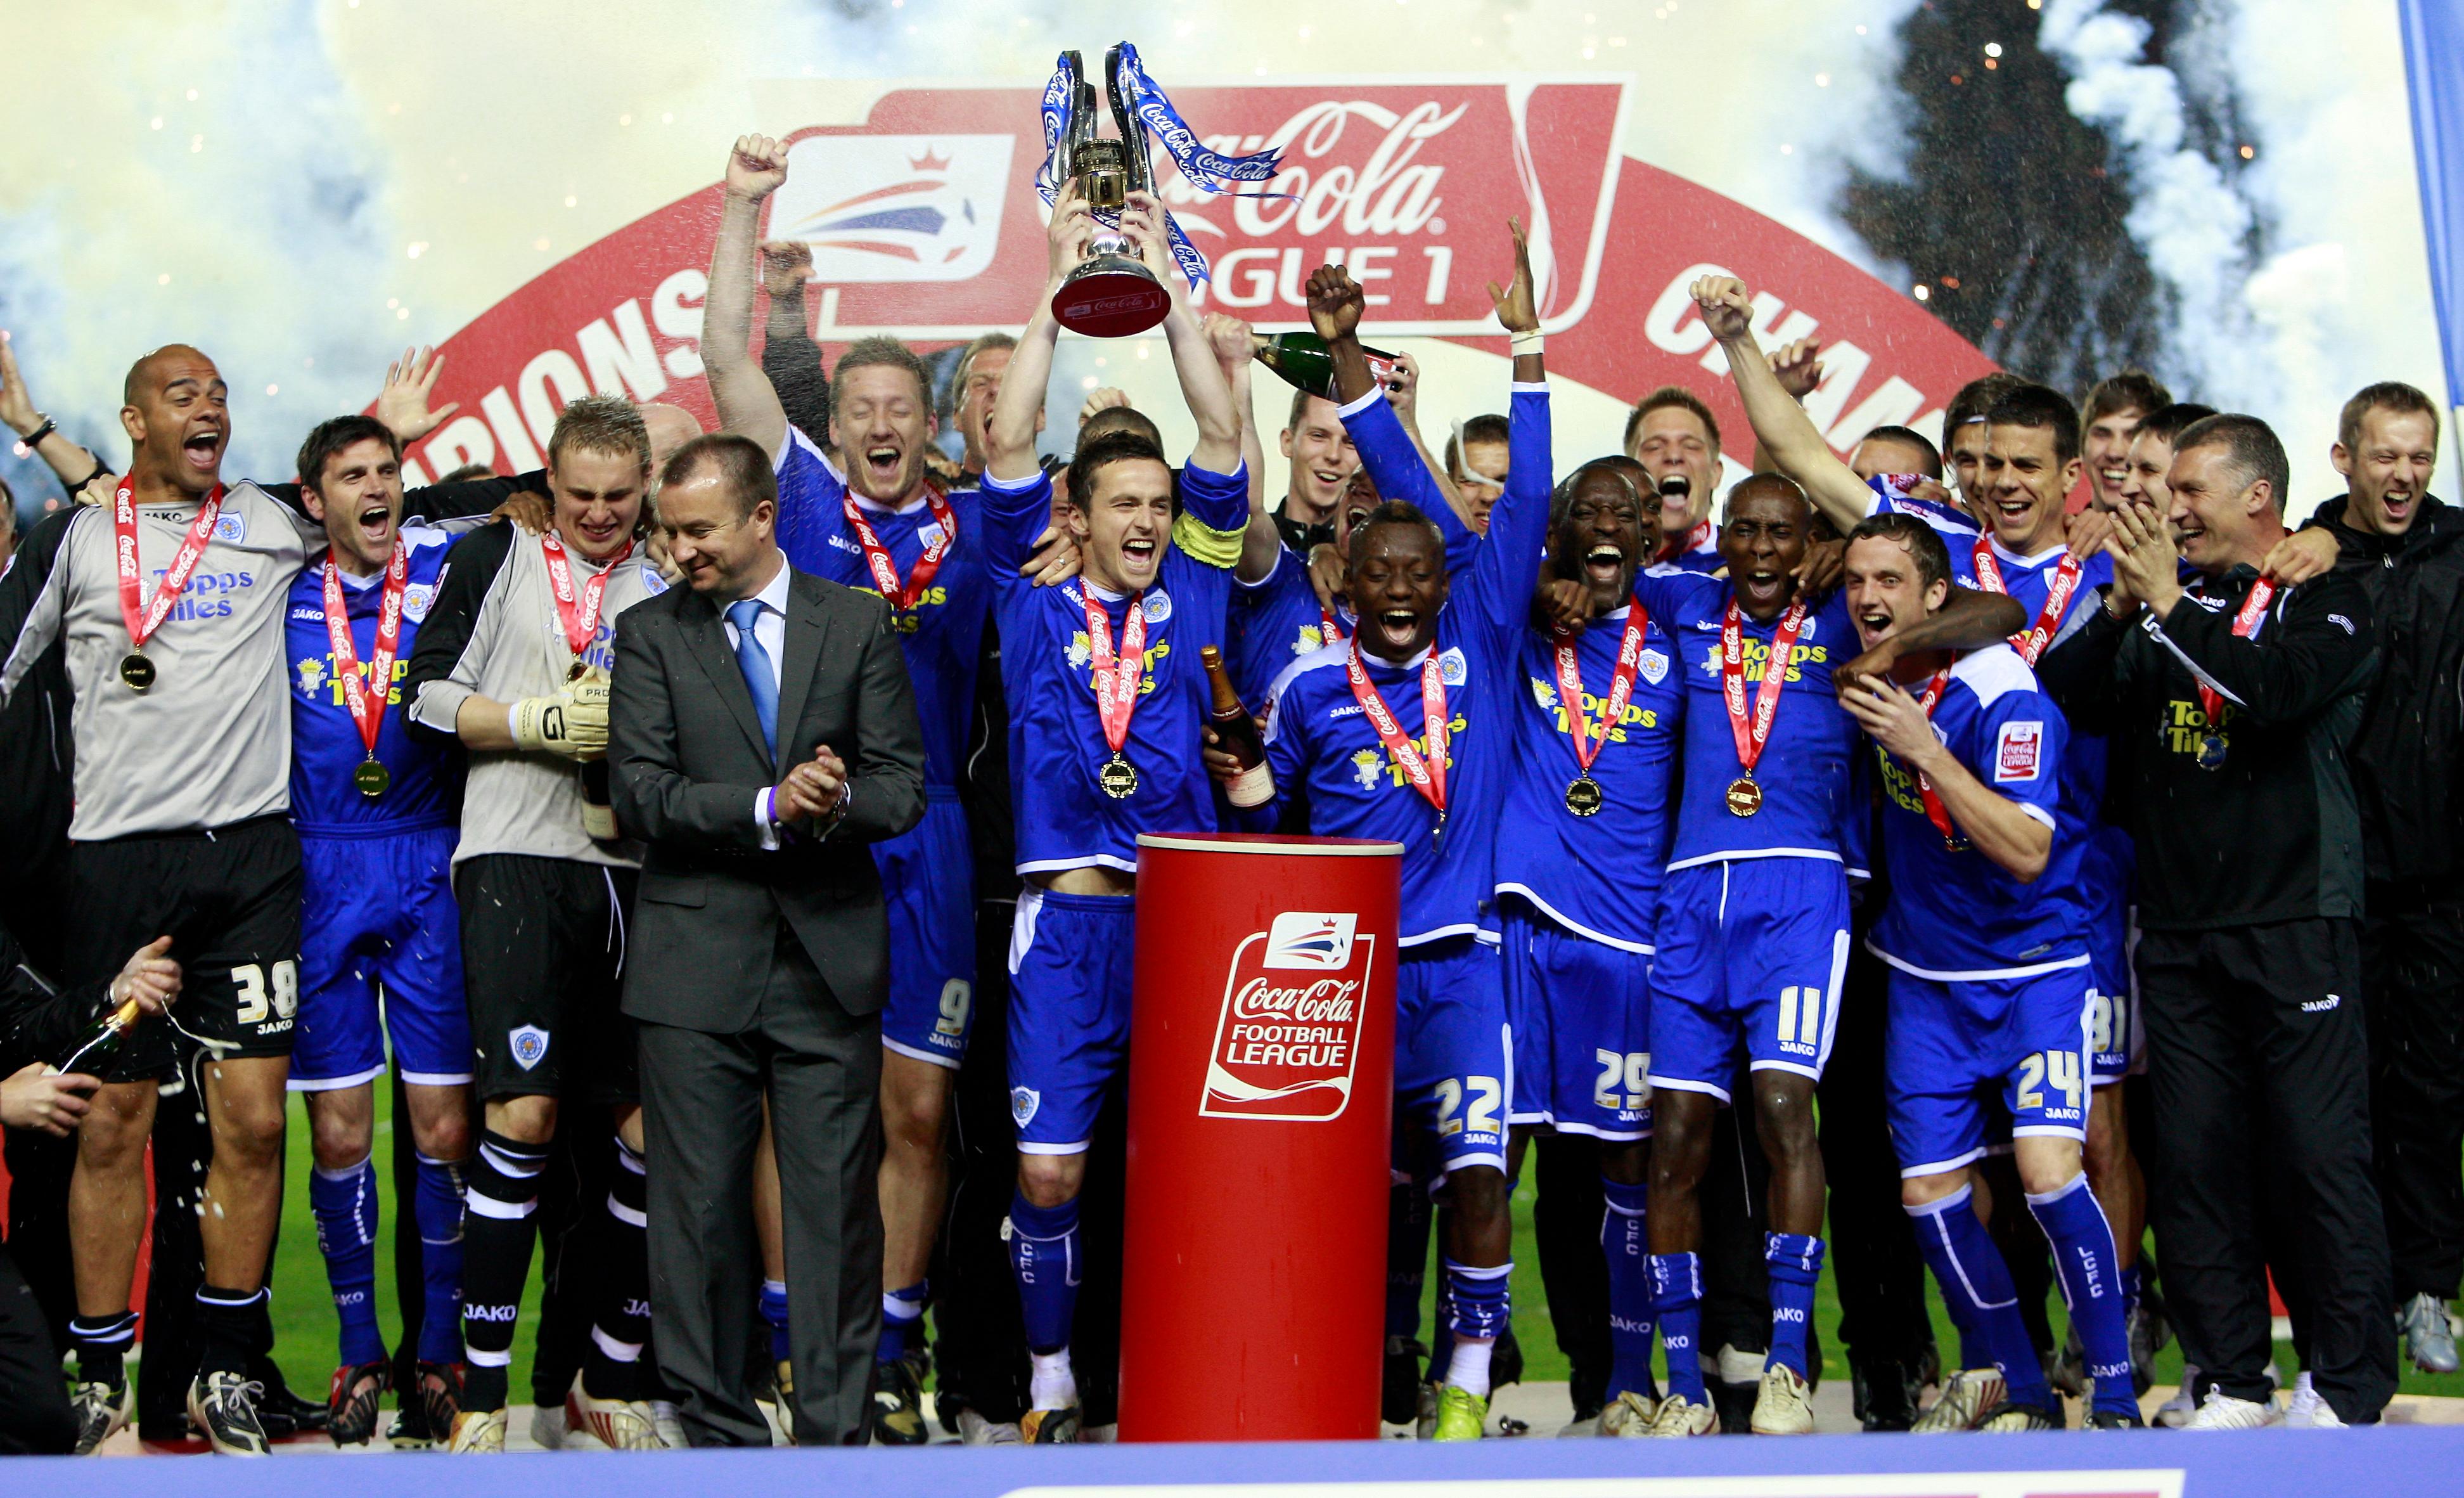 Plantilla del Leicester en la temporada 2008-09 celebrando el título de tercera división inglesa